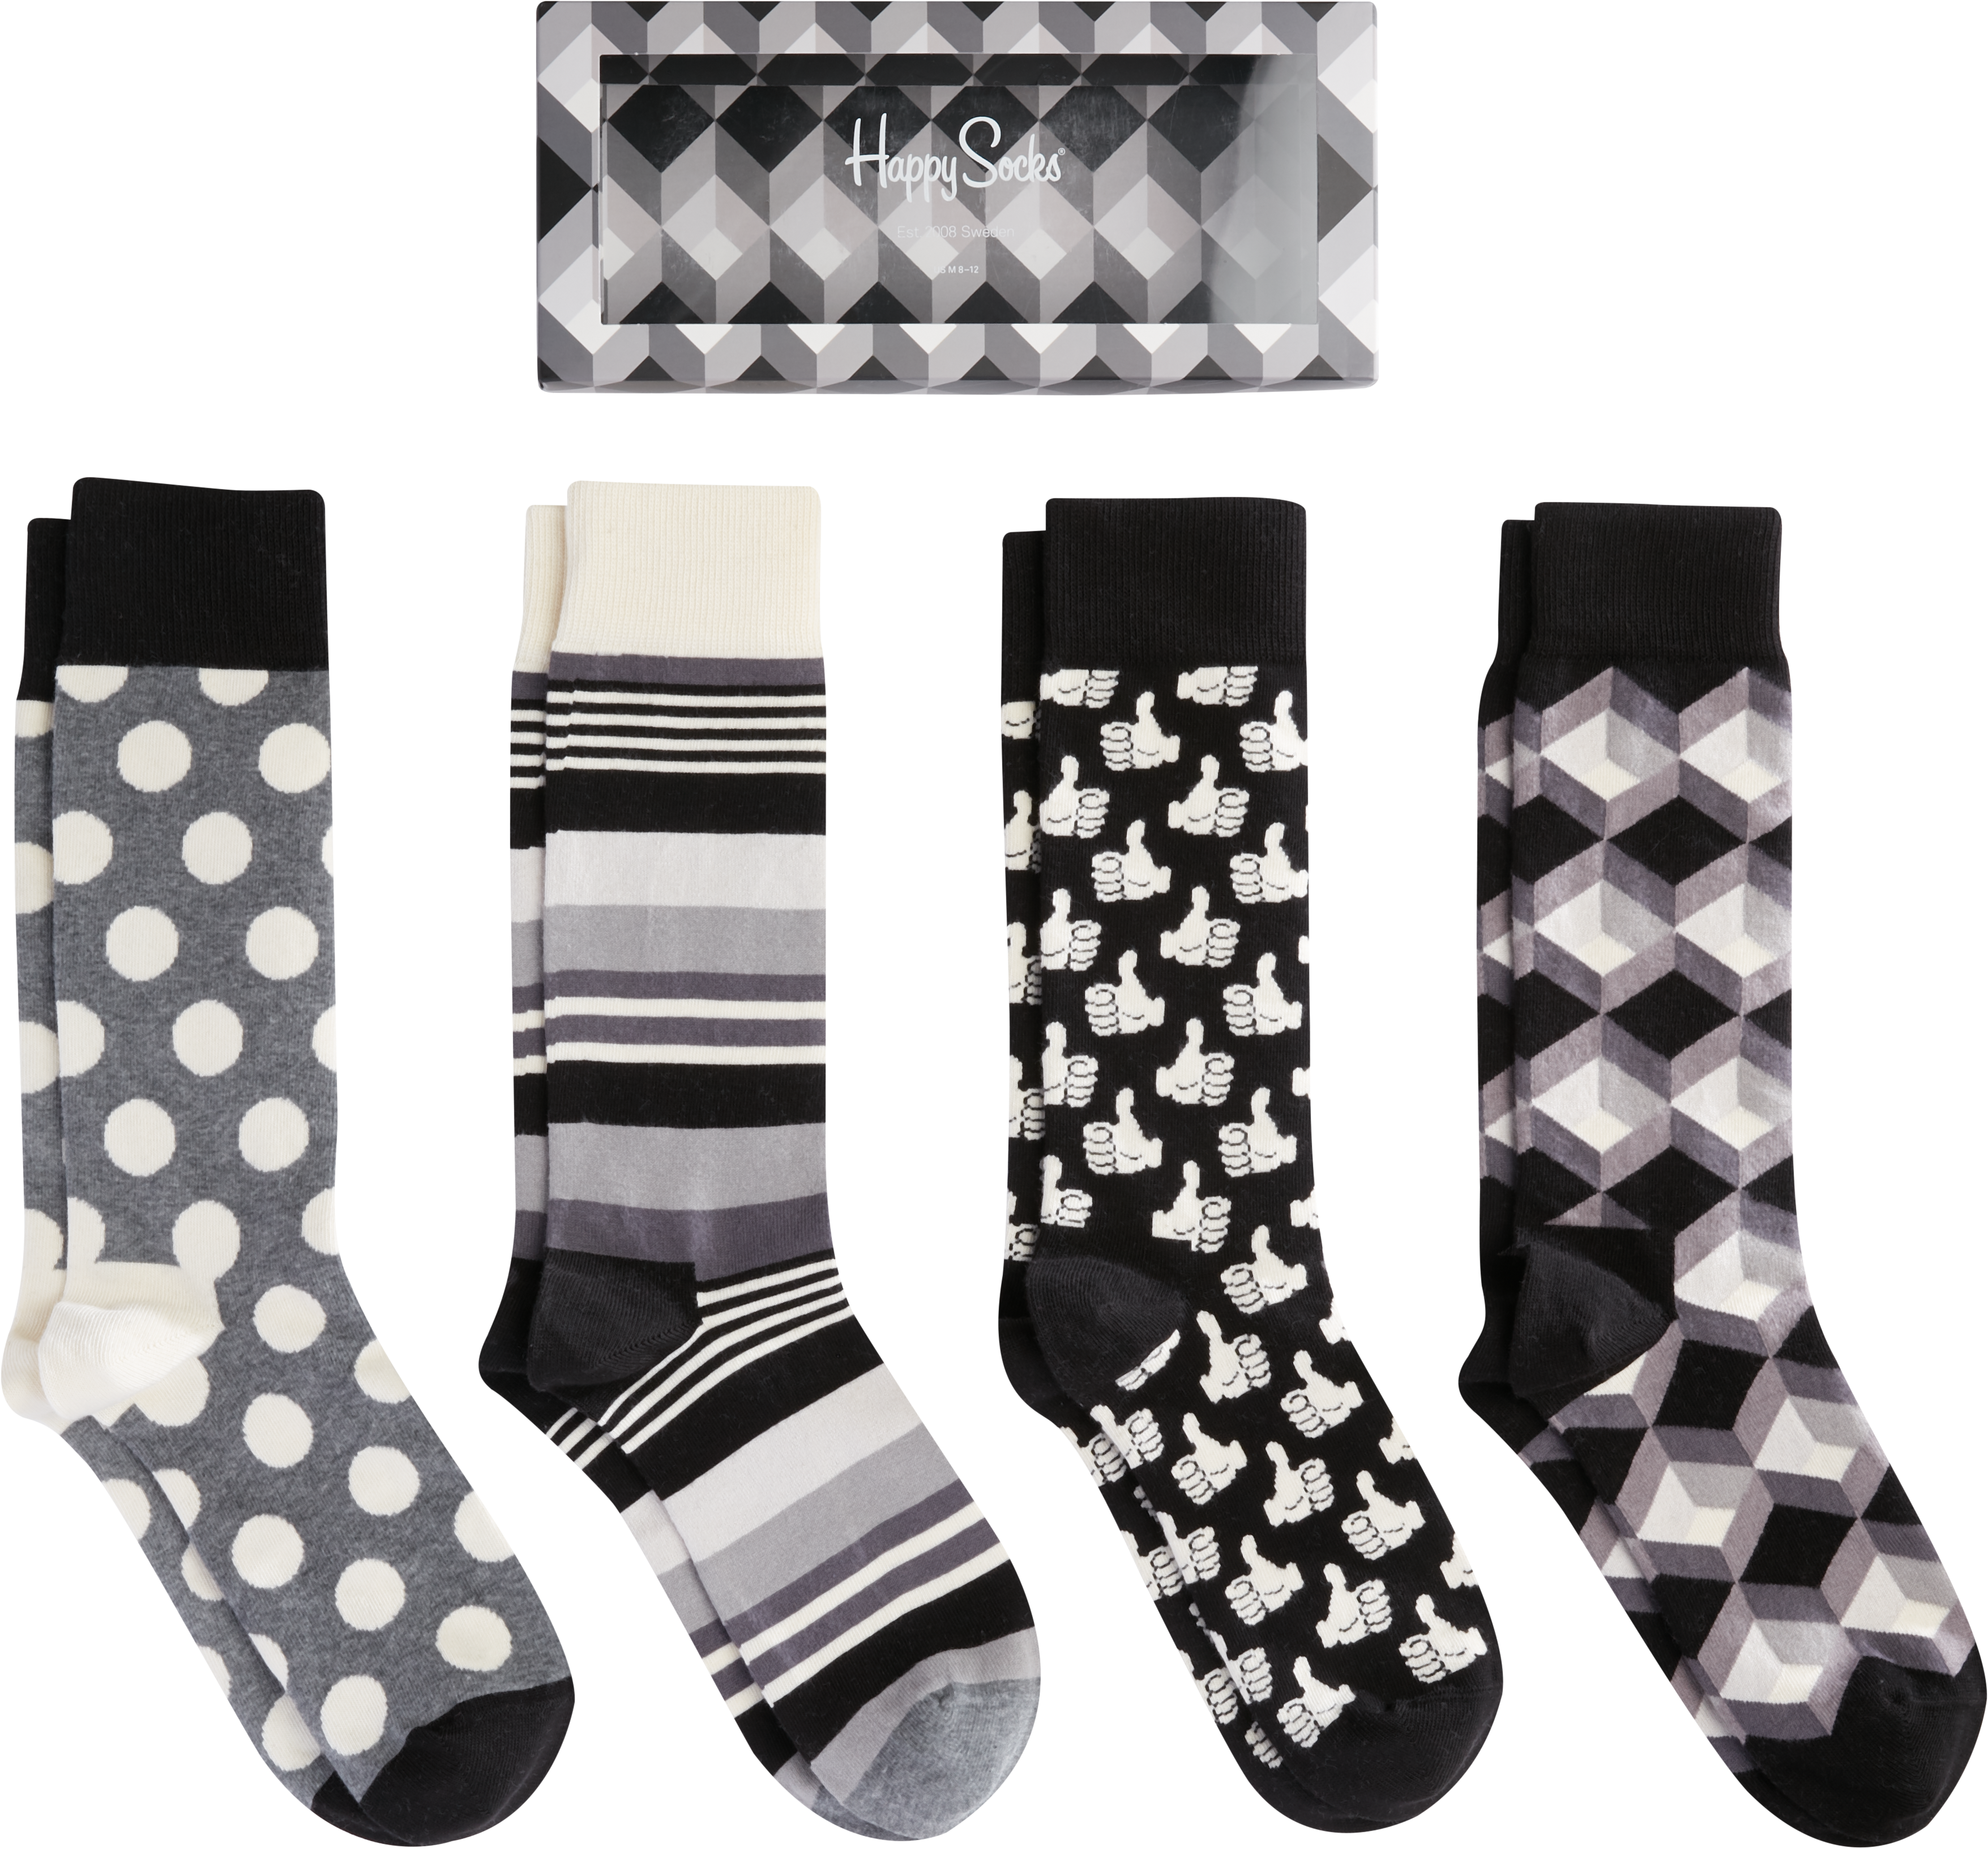 mens socks gift set